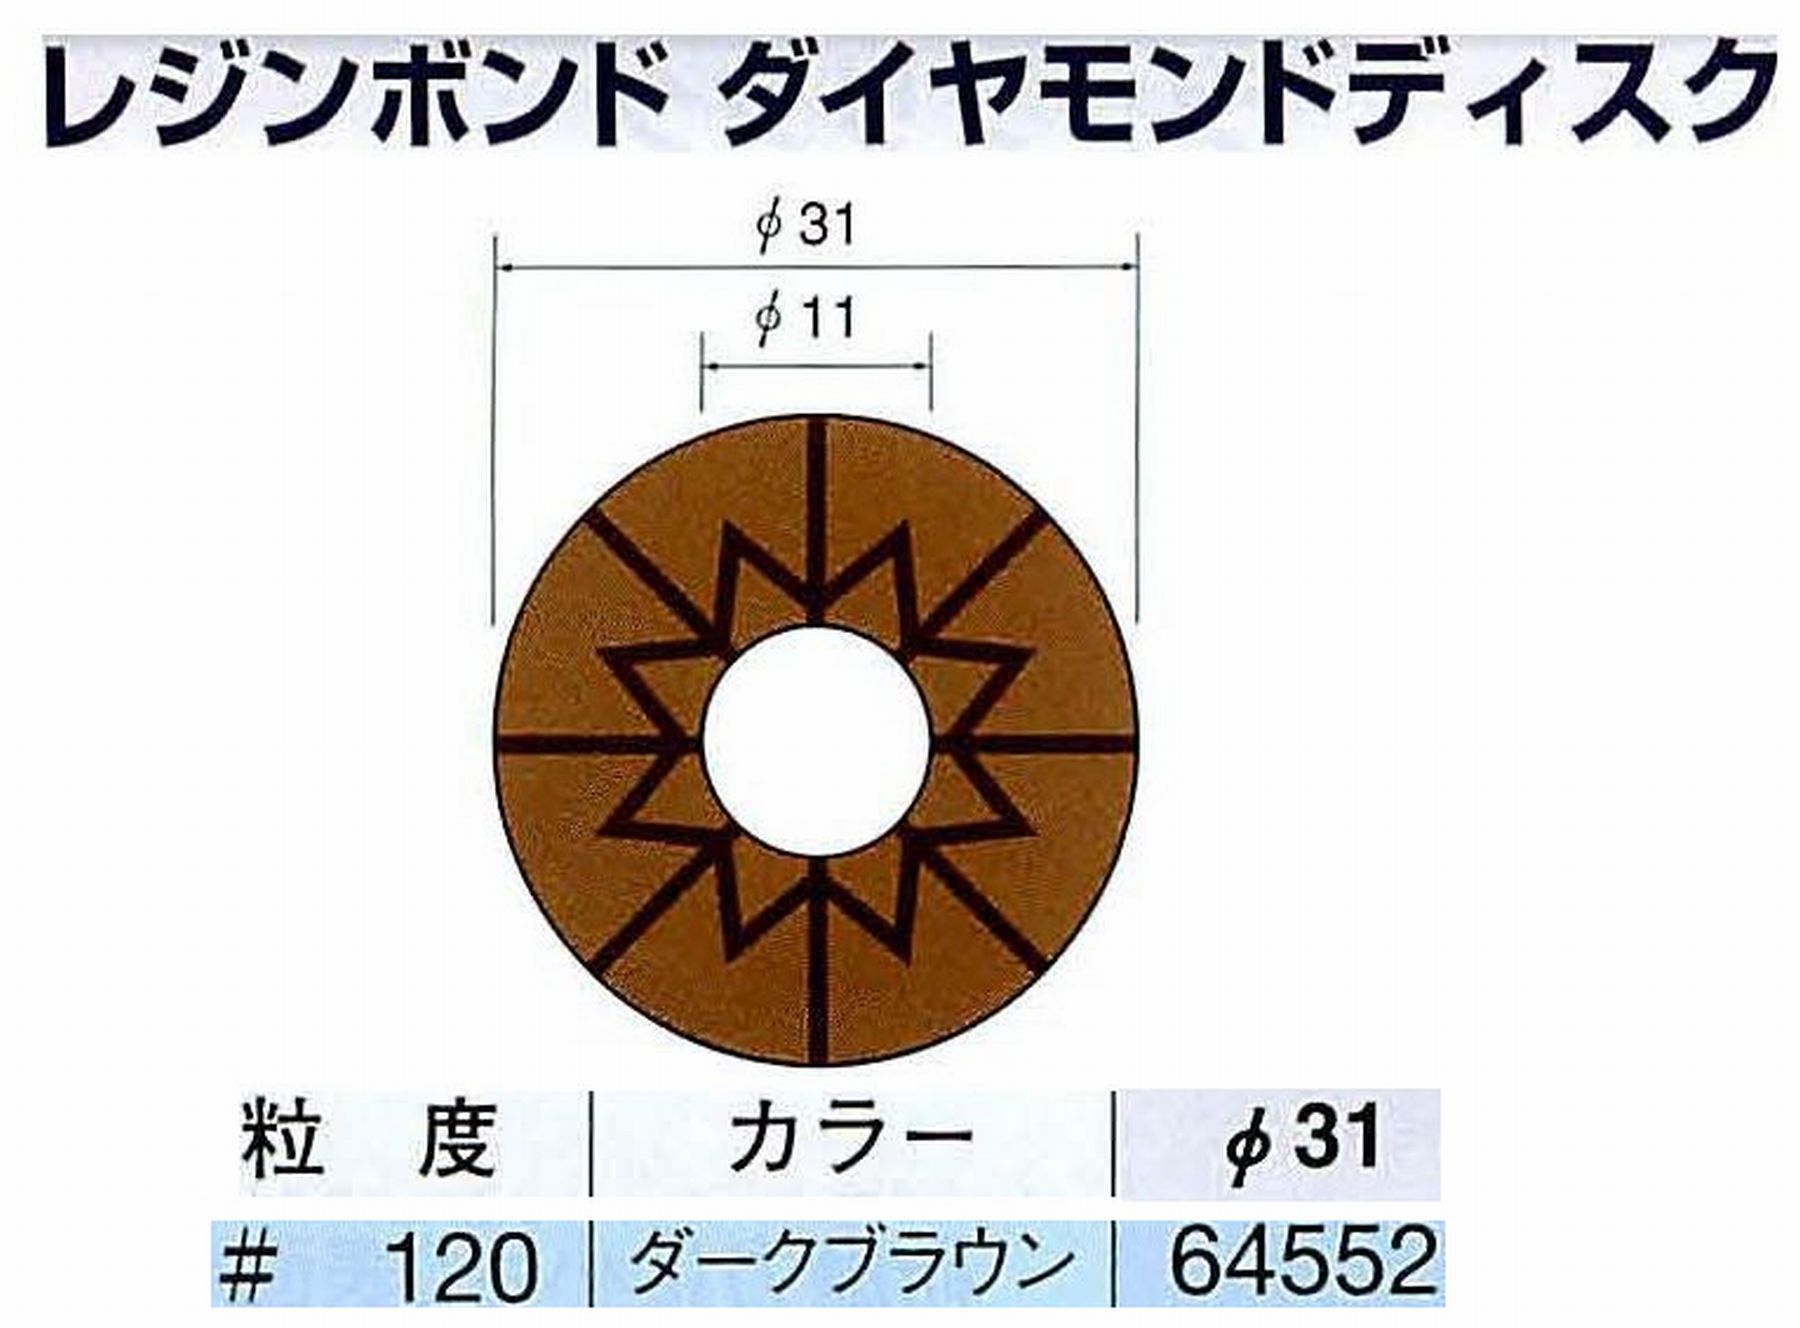 ナカニシ/NAKANISHI アングルグラインダ(電動・エアー) アングルアタッチメント専用工具 レジンボンド ダイヤモンドディスク(パターンタイプ) 64552